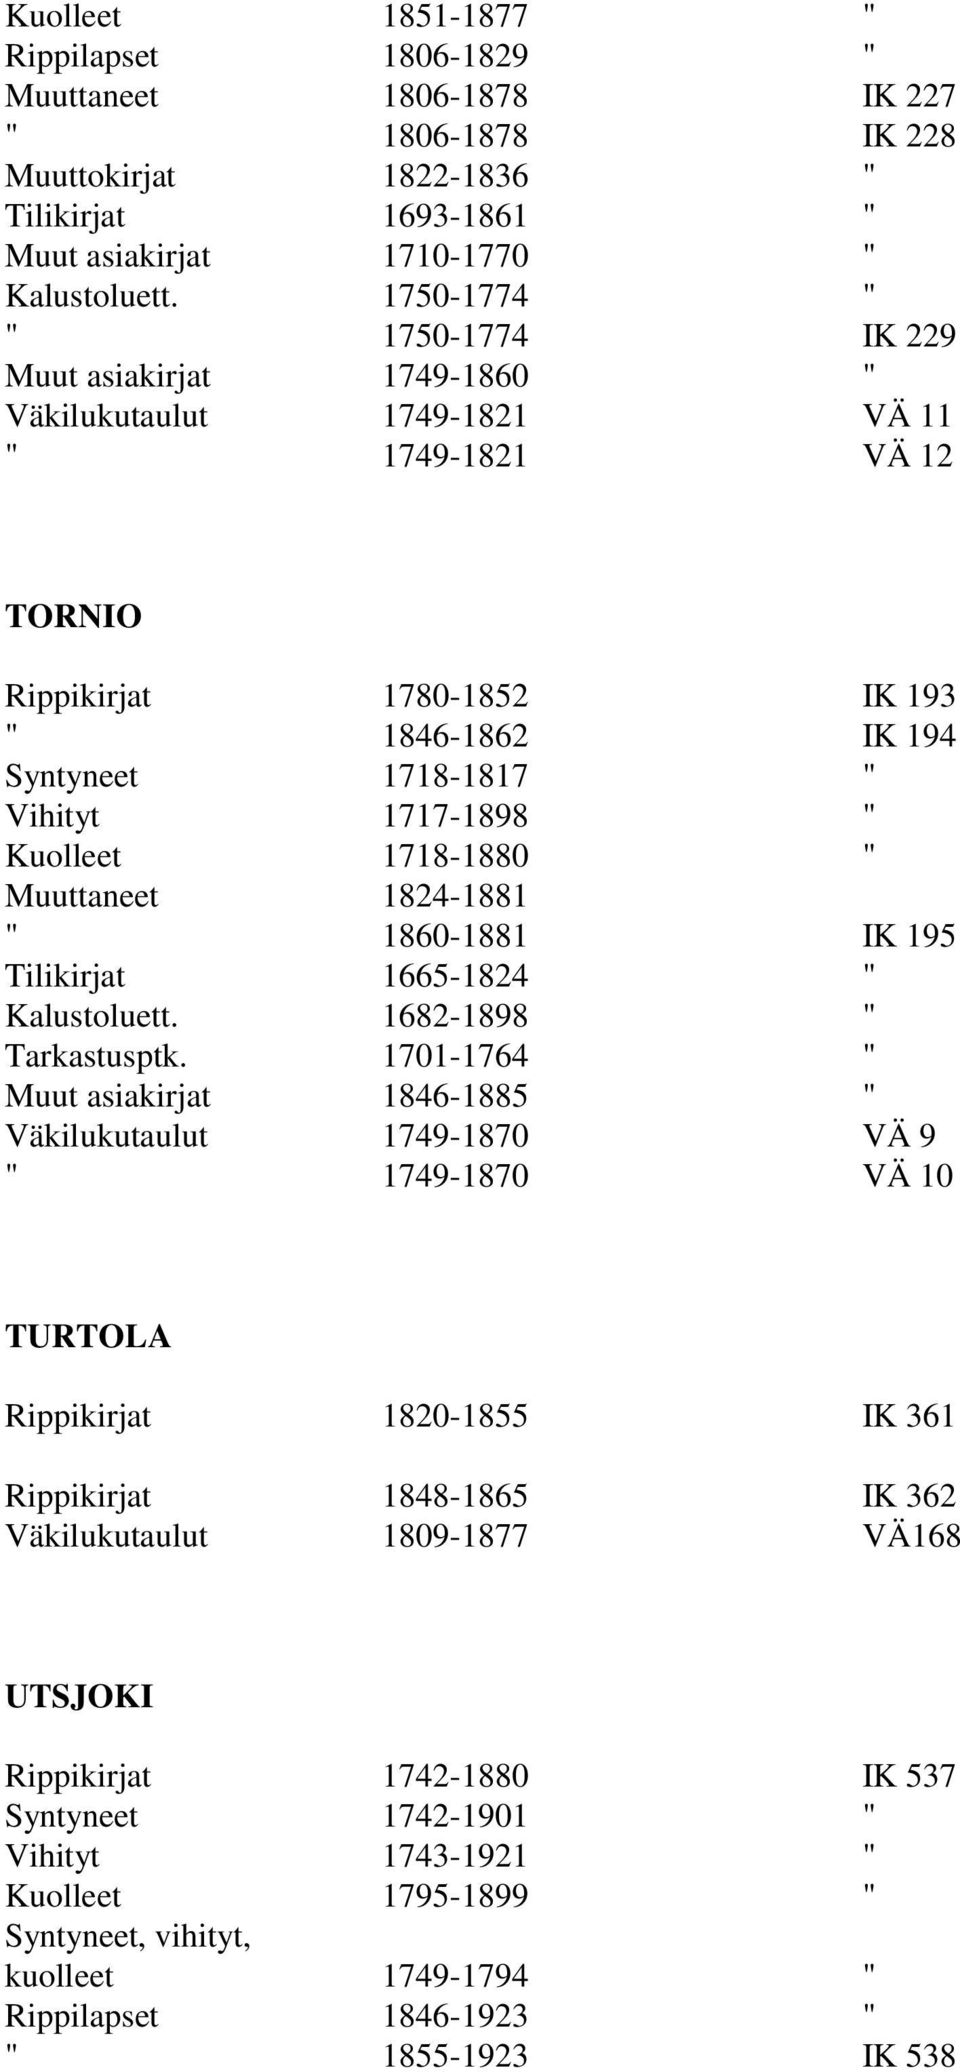 1717-1898 " Kuolleet 1718-1880 " Muuttaneet 1824-1881 " 1860-1881 IK 195 Tilikirjat 1665-1824 " Kalustoluett. 1682-1898 " Tarkastusptk.